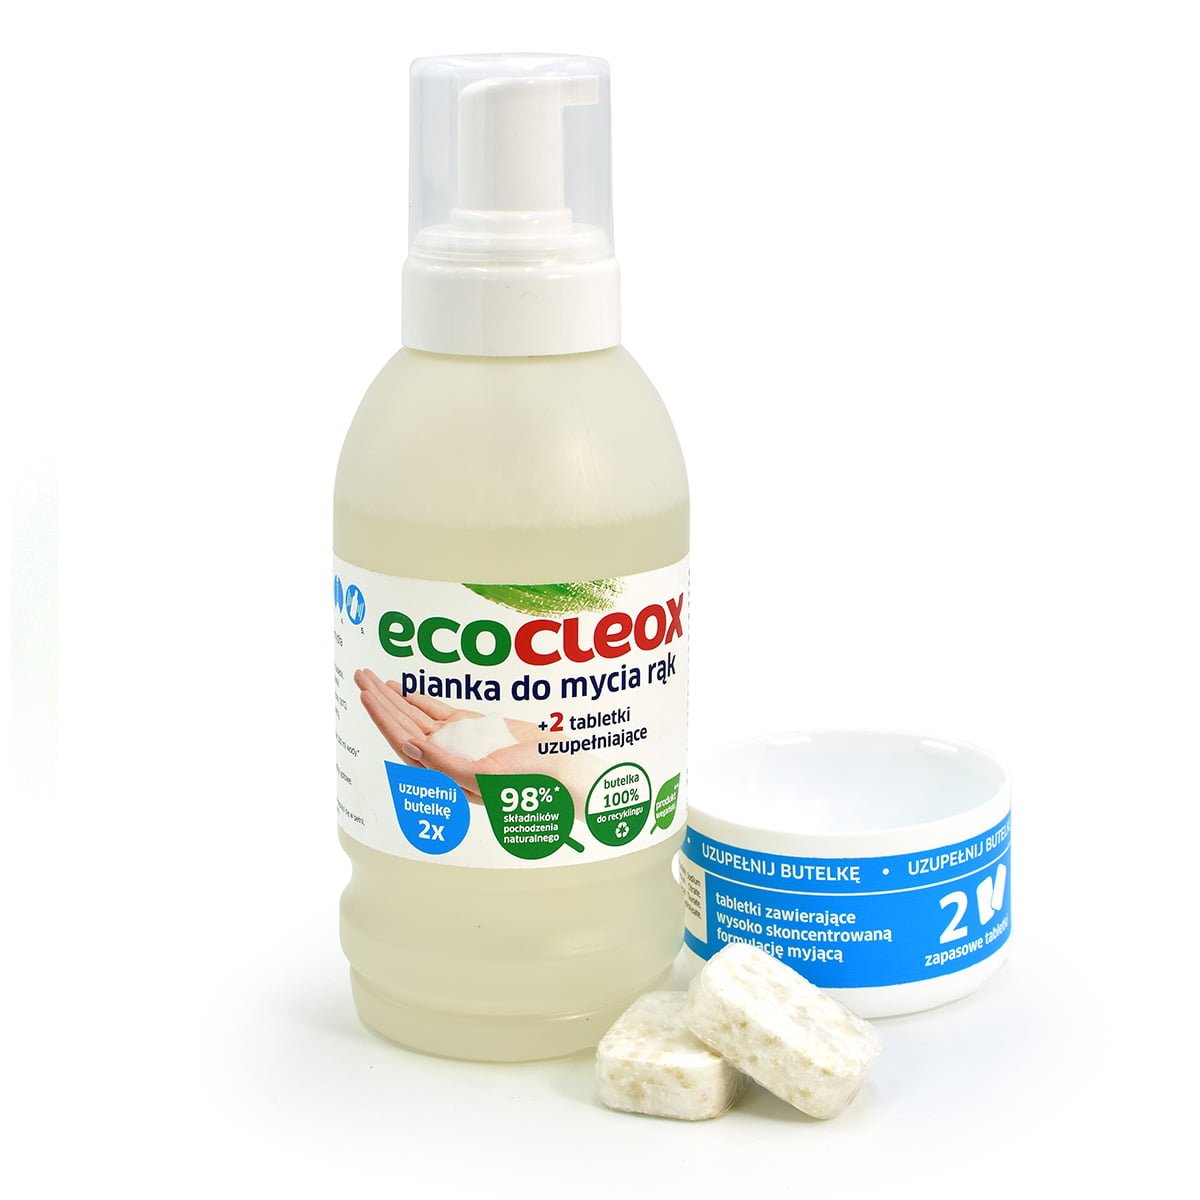 Pianka do mycia rąk – ECOCLEOX (3x500ml)